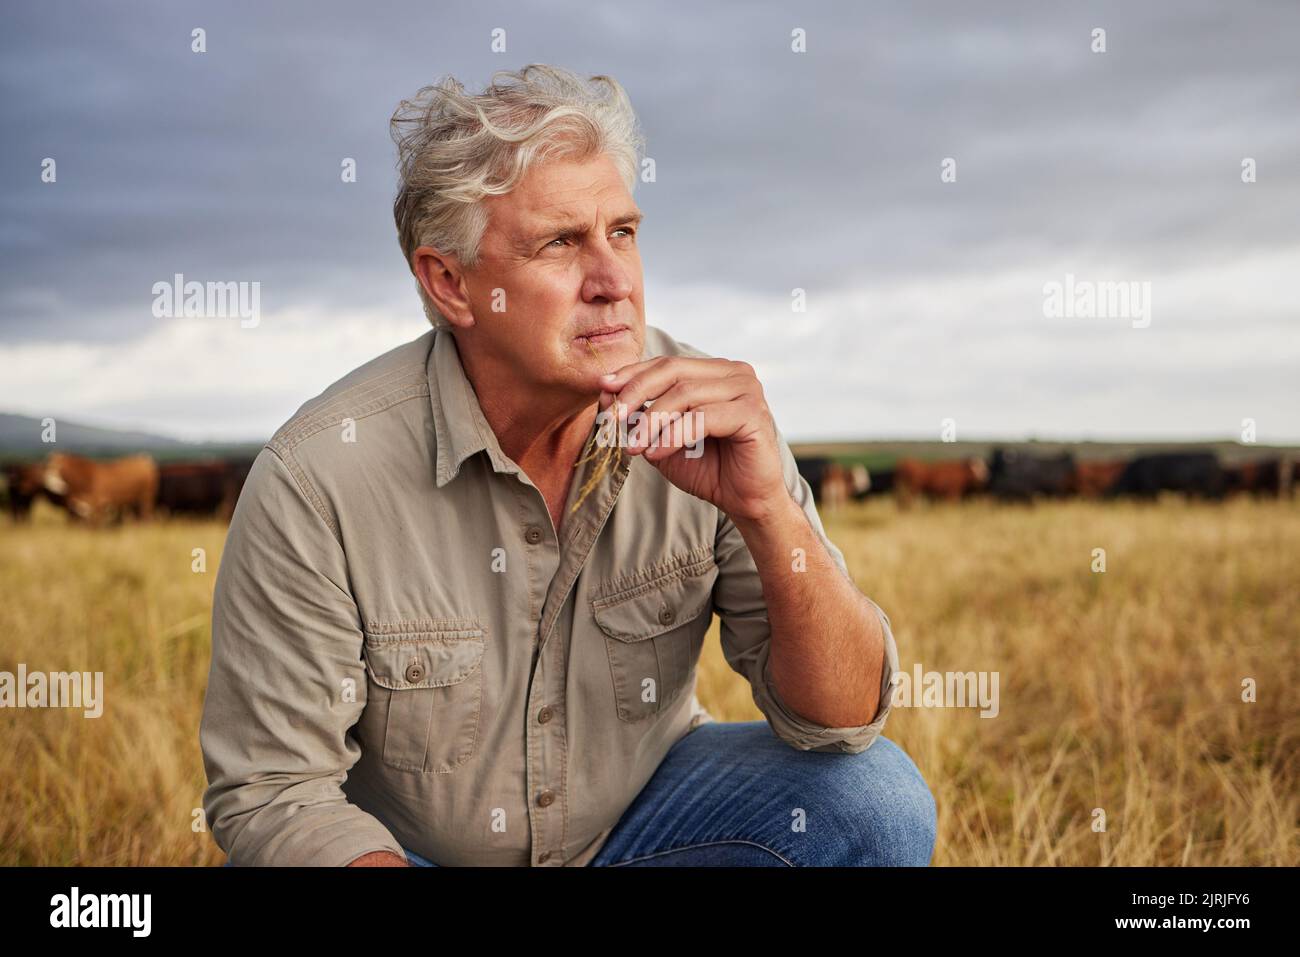 Die Einstellung eines Landwirts, der an einen Bauernhof mit Gewitterwolken am Himmel oder am Wetter denkt, um die Landwirtschaft im Freien oder auf dem Land zu betreiben. Nachhaltigkeitsmitarbeiter auf Stockfoto